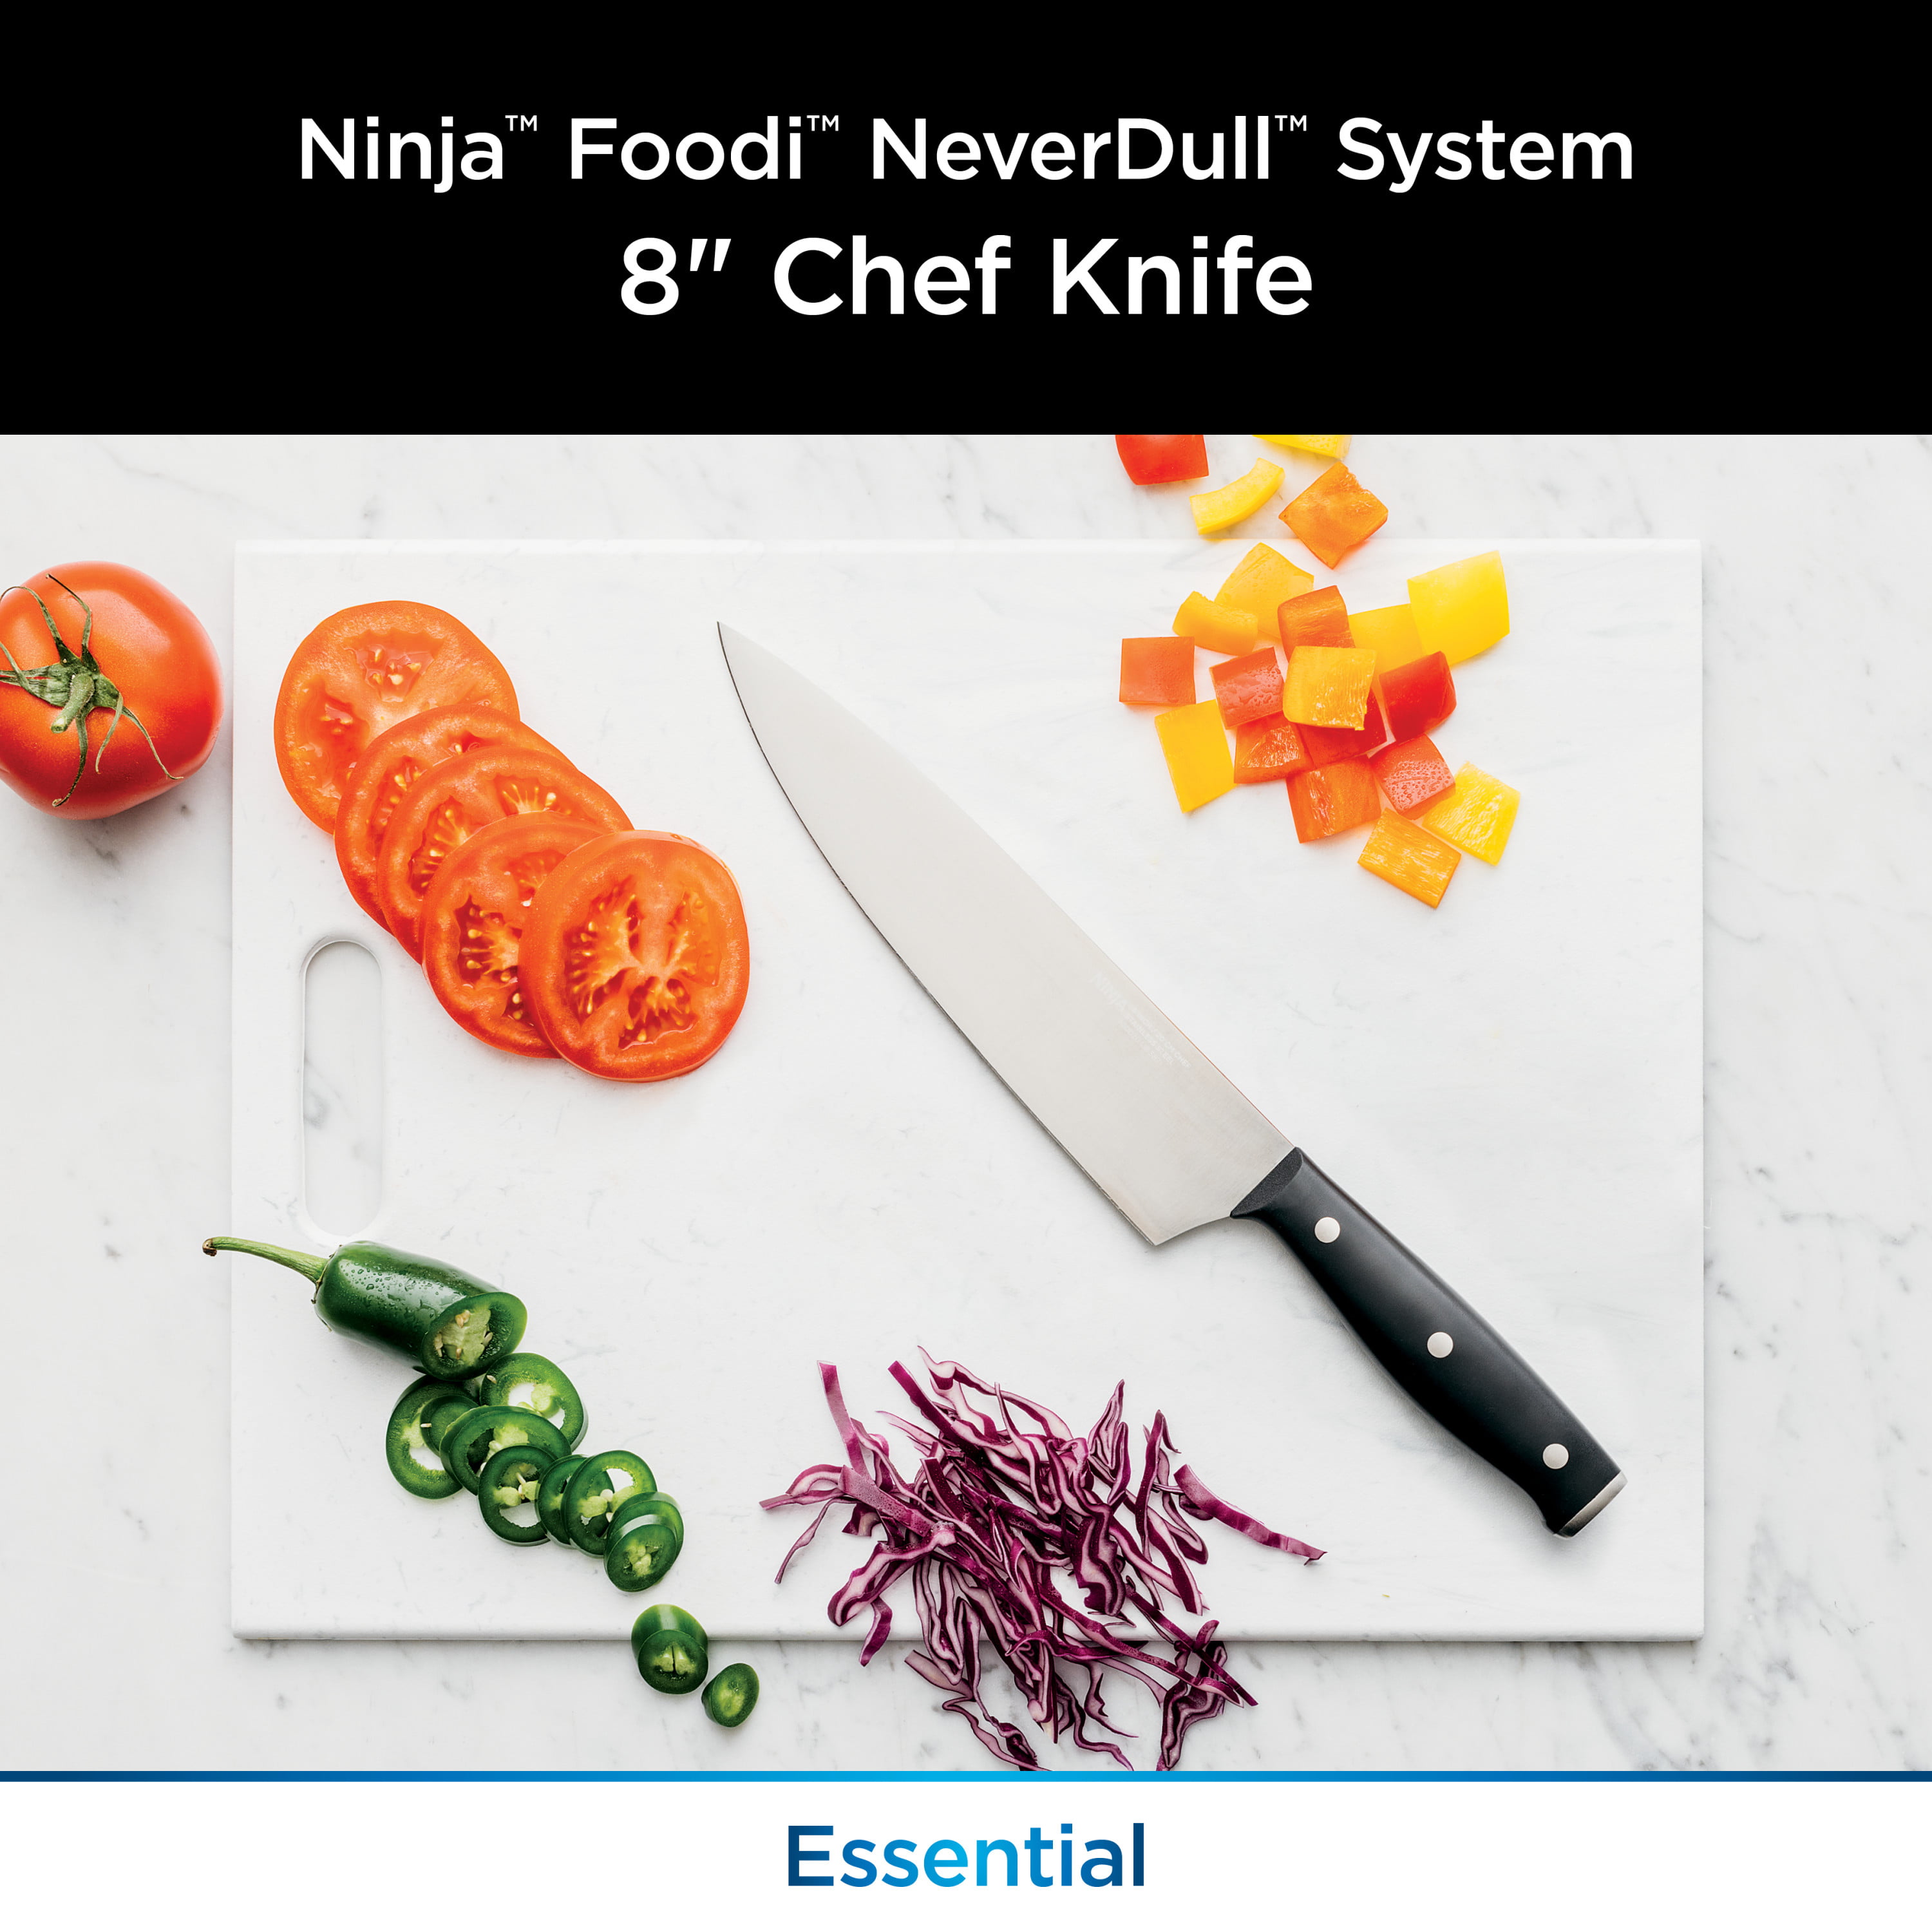 Ninja Foodi NeverDull System Premium 8” German Stainless Chef